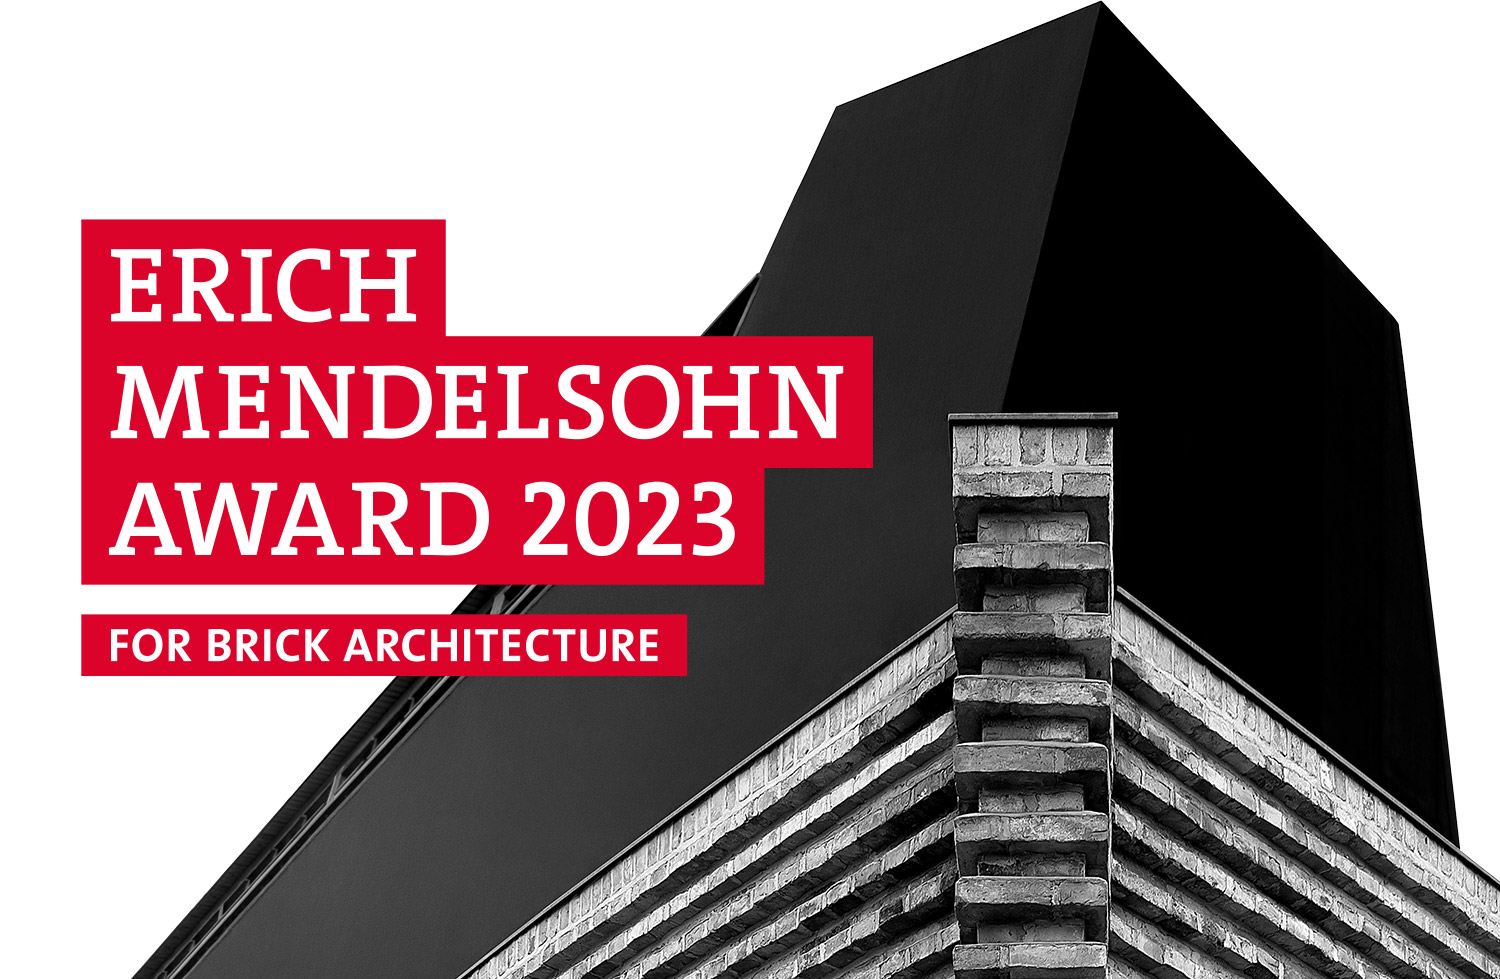 Erich Mendelsohn Award 2023 for Brick Architecture 